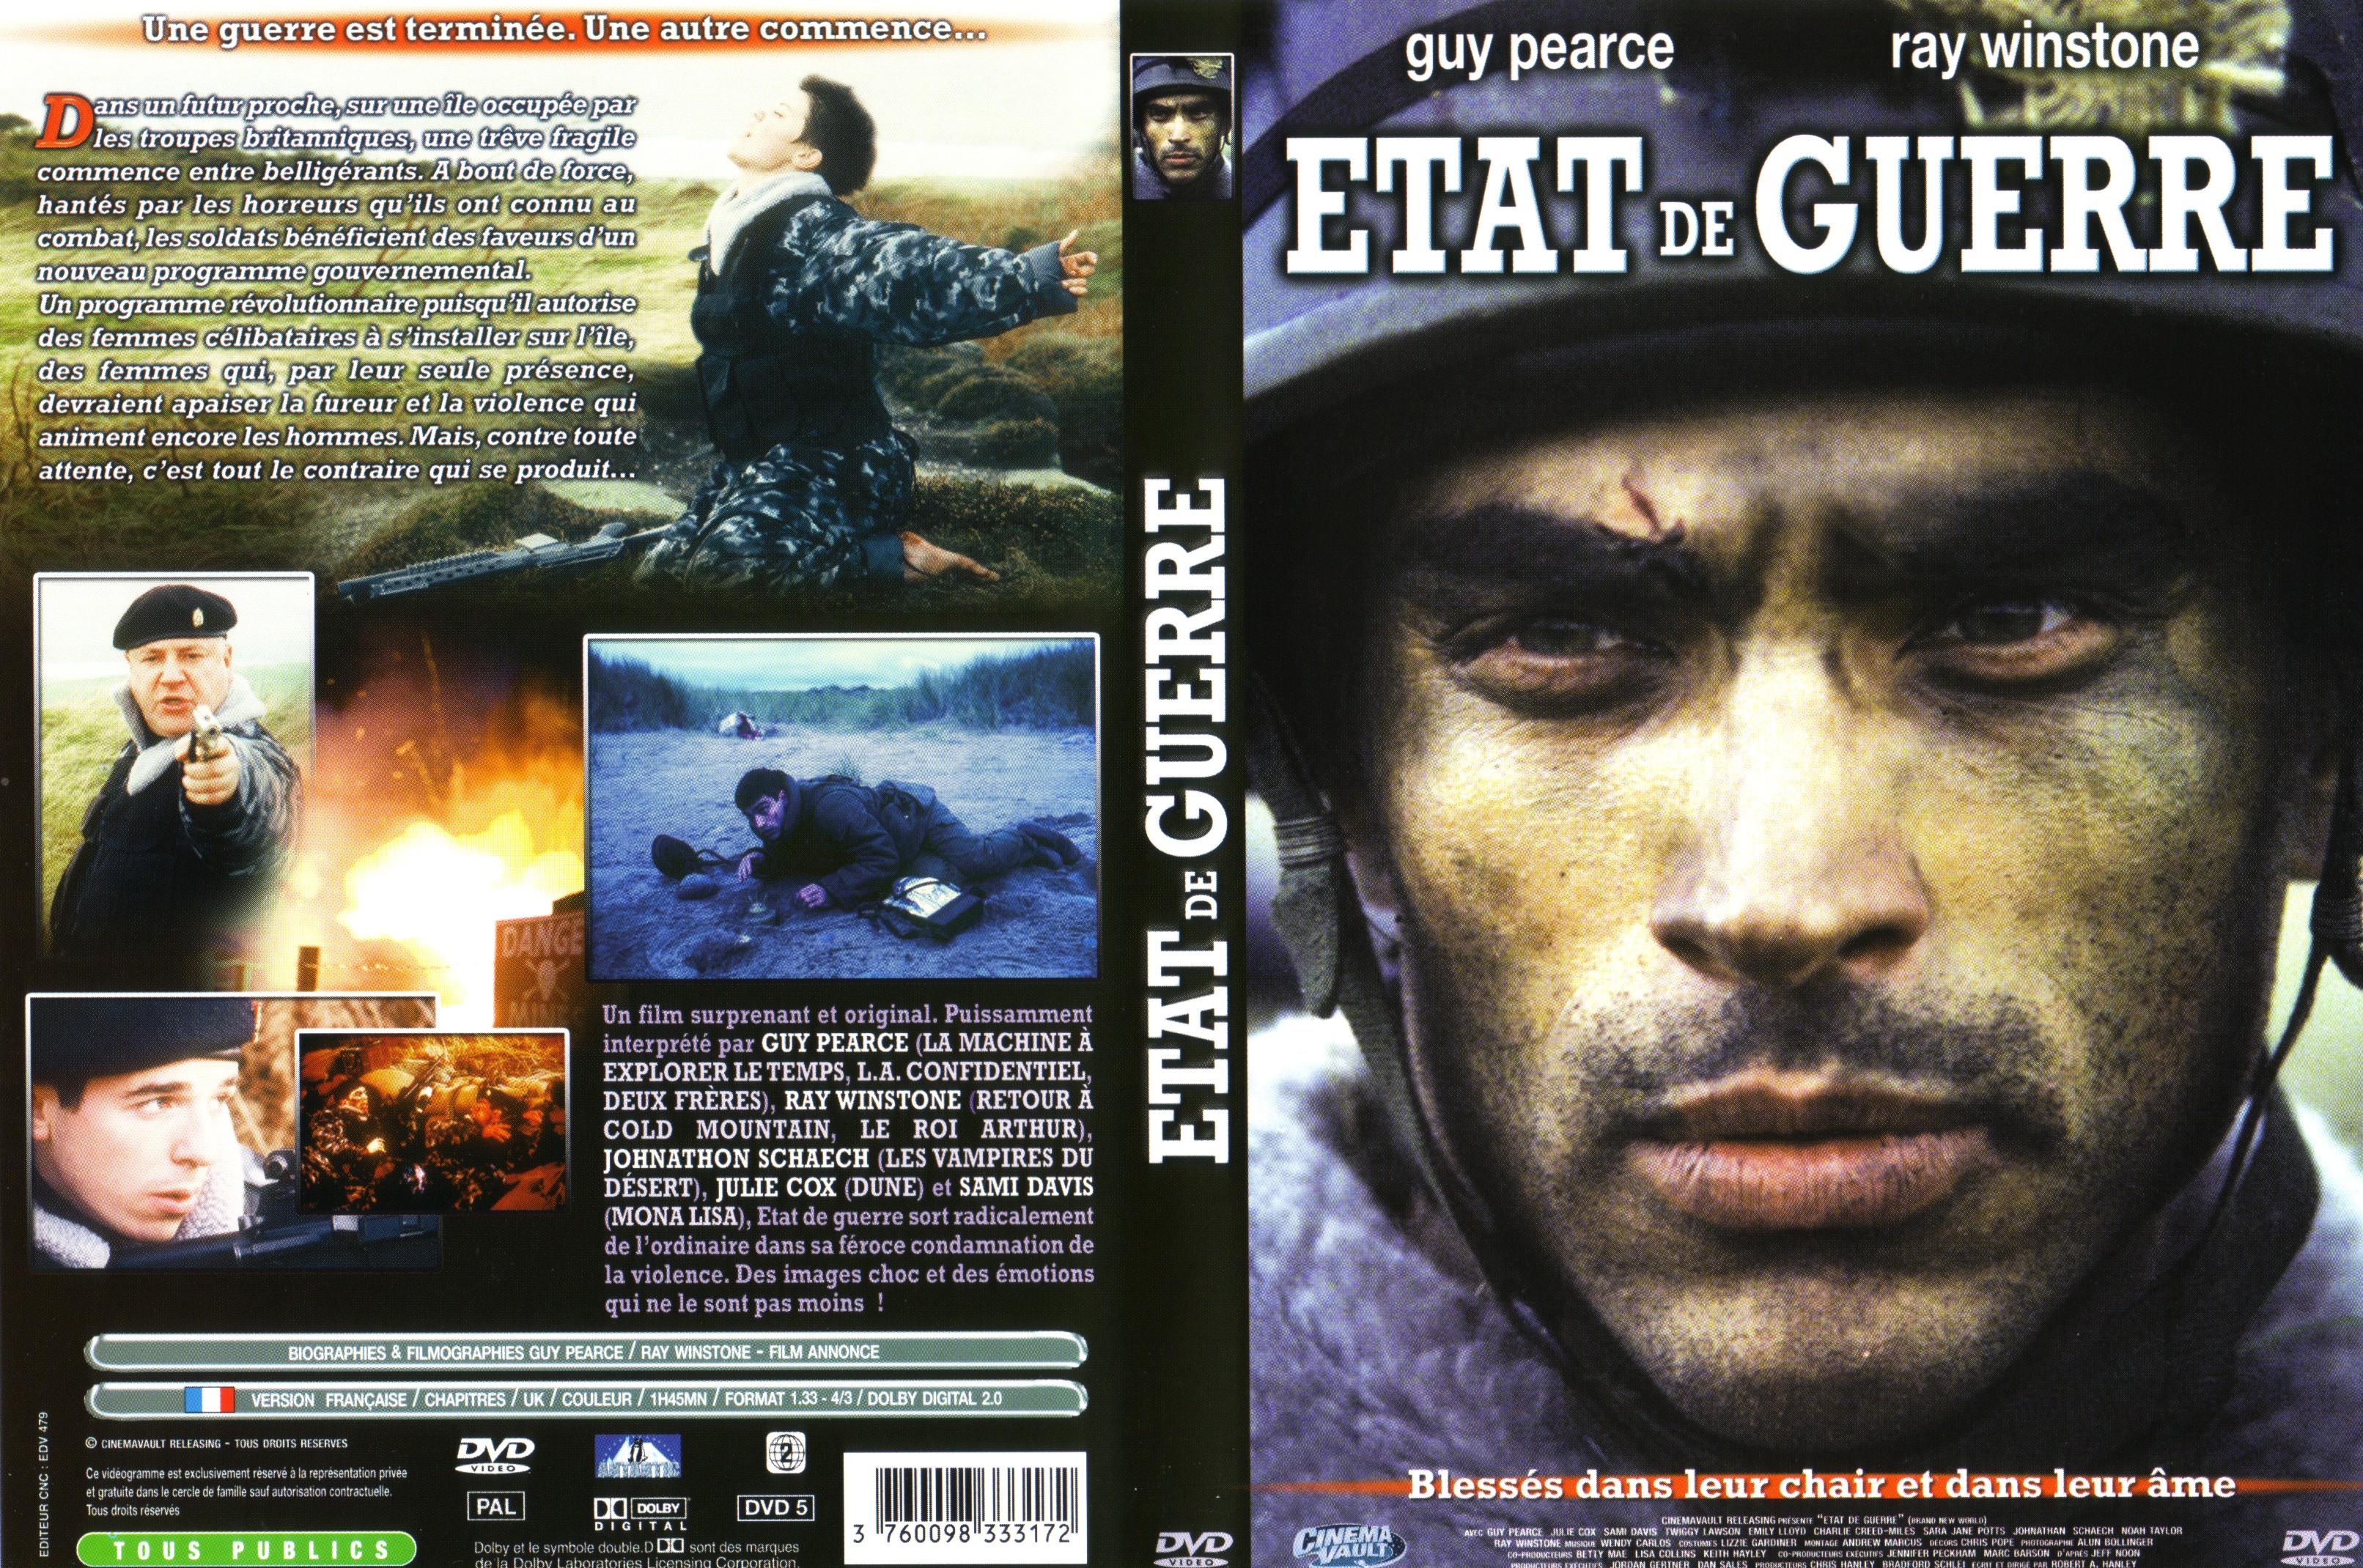 Jaquette DVD Etat de guerre (Guy Pearce)